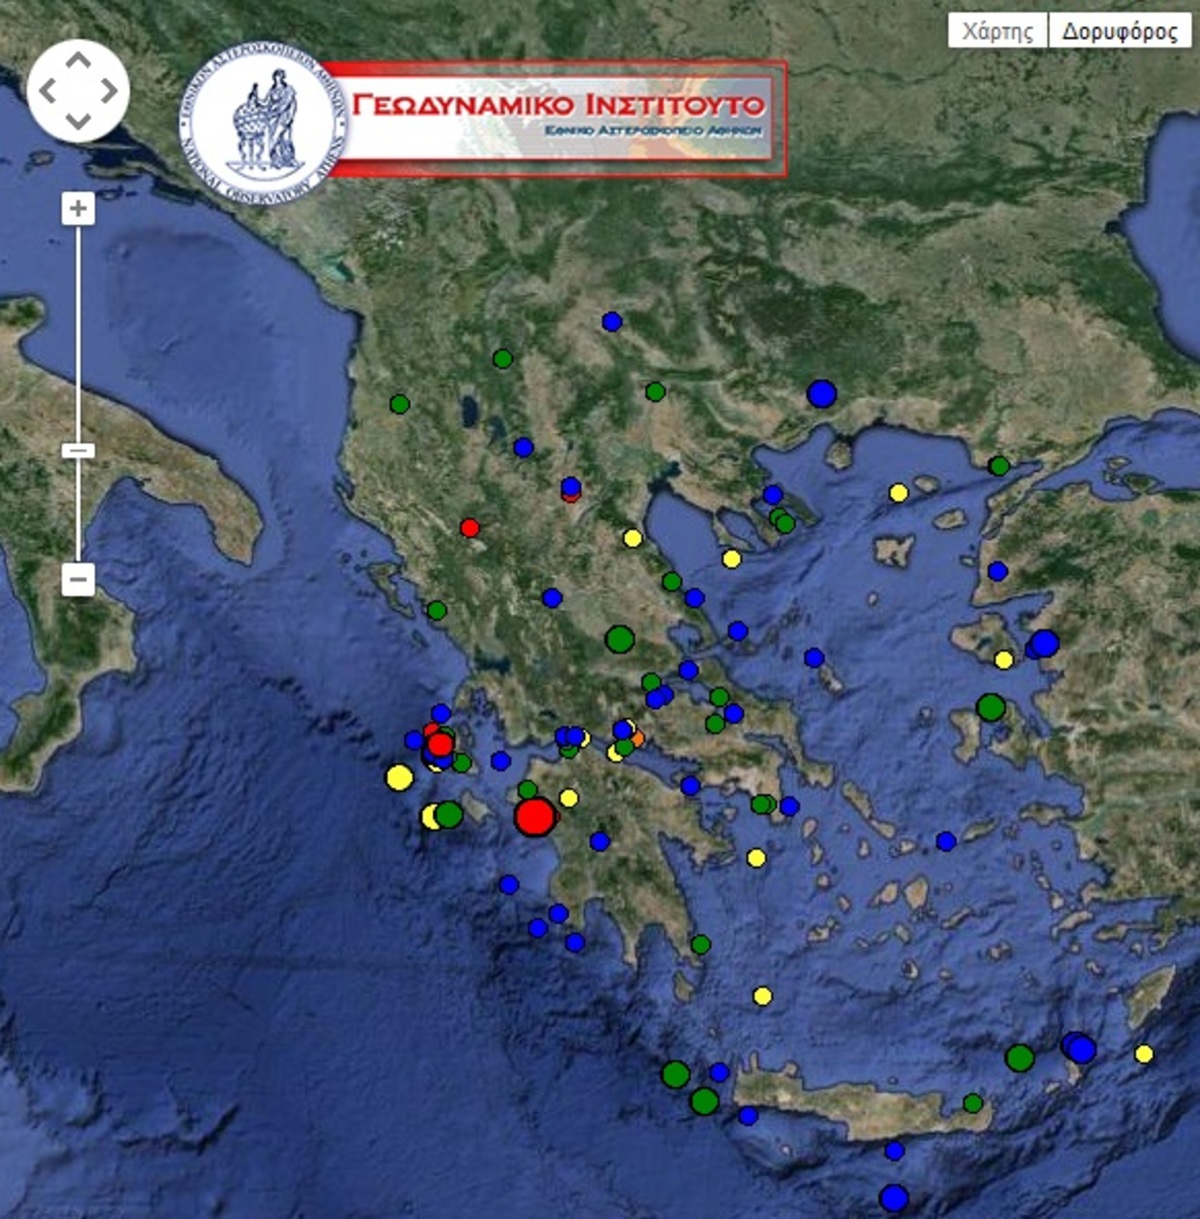 Xάρτης από το Γεωδυναμικό Ινστιτούτο Αθηνών